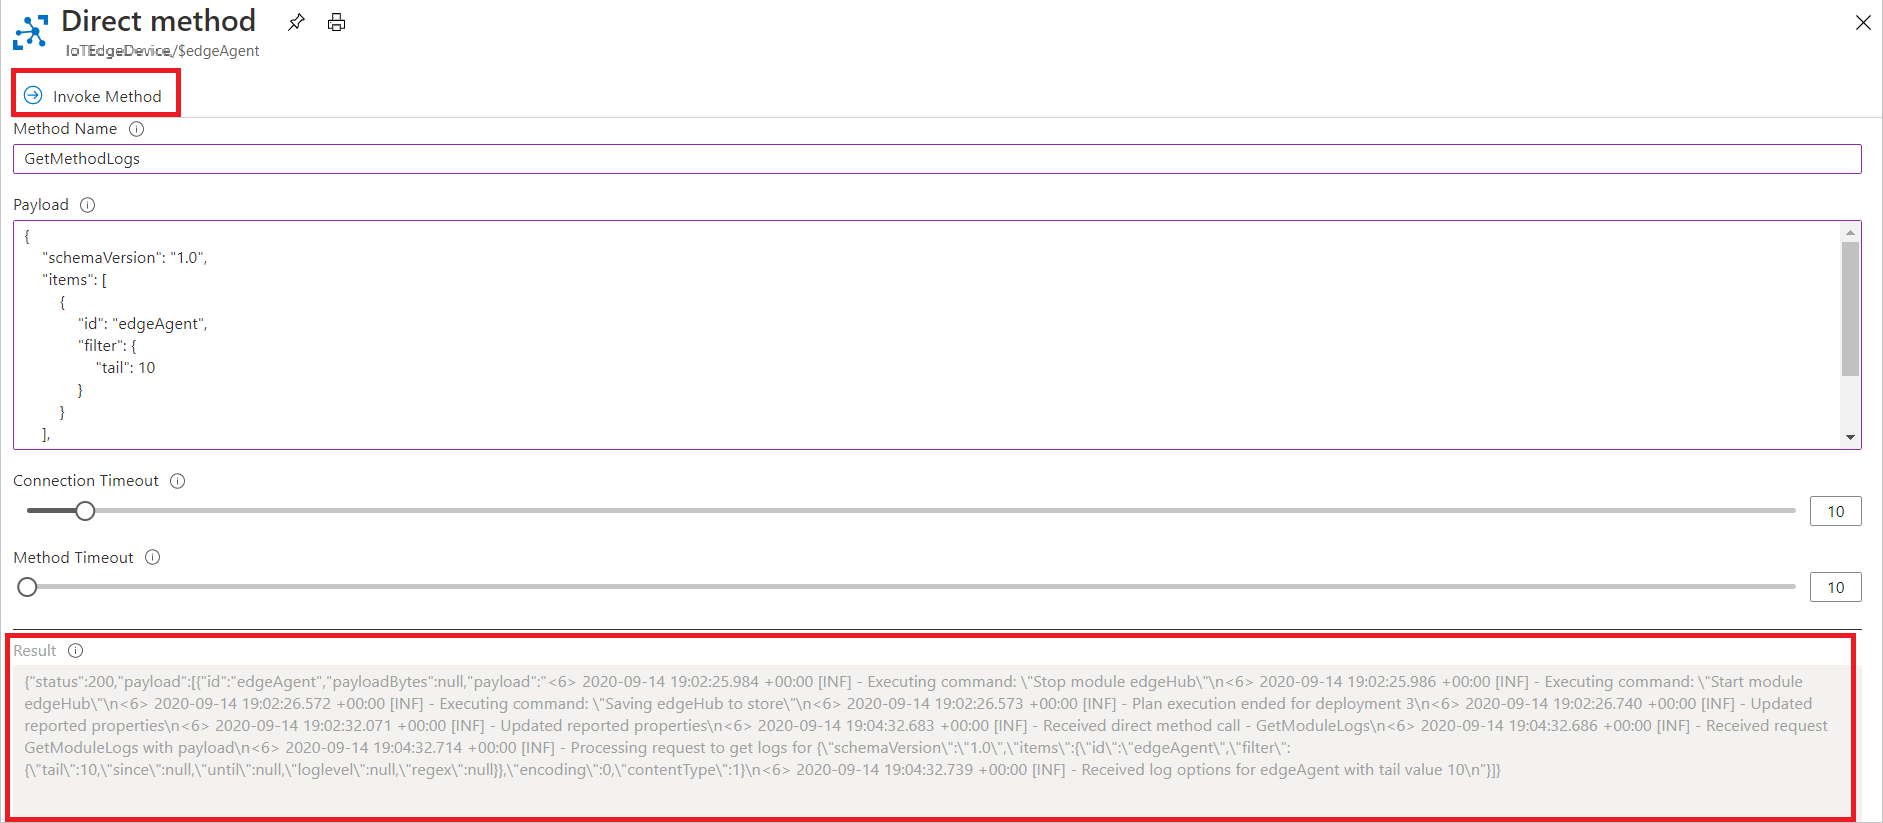 Captura de tela de como invocar o método direto GetModuleLogs no portal do Azure.